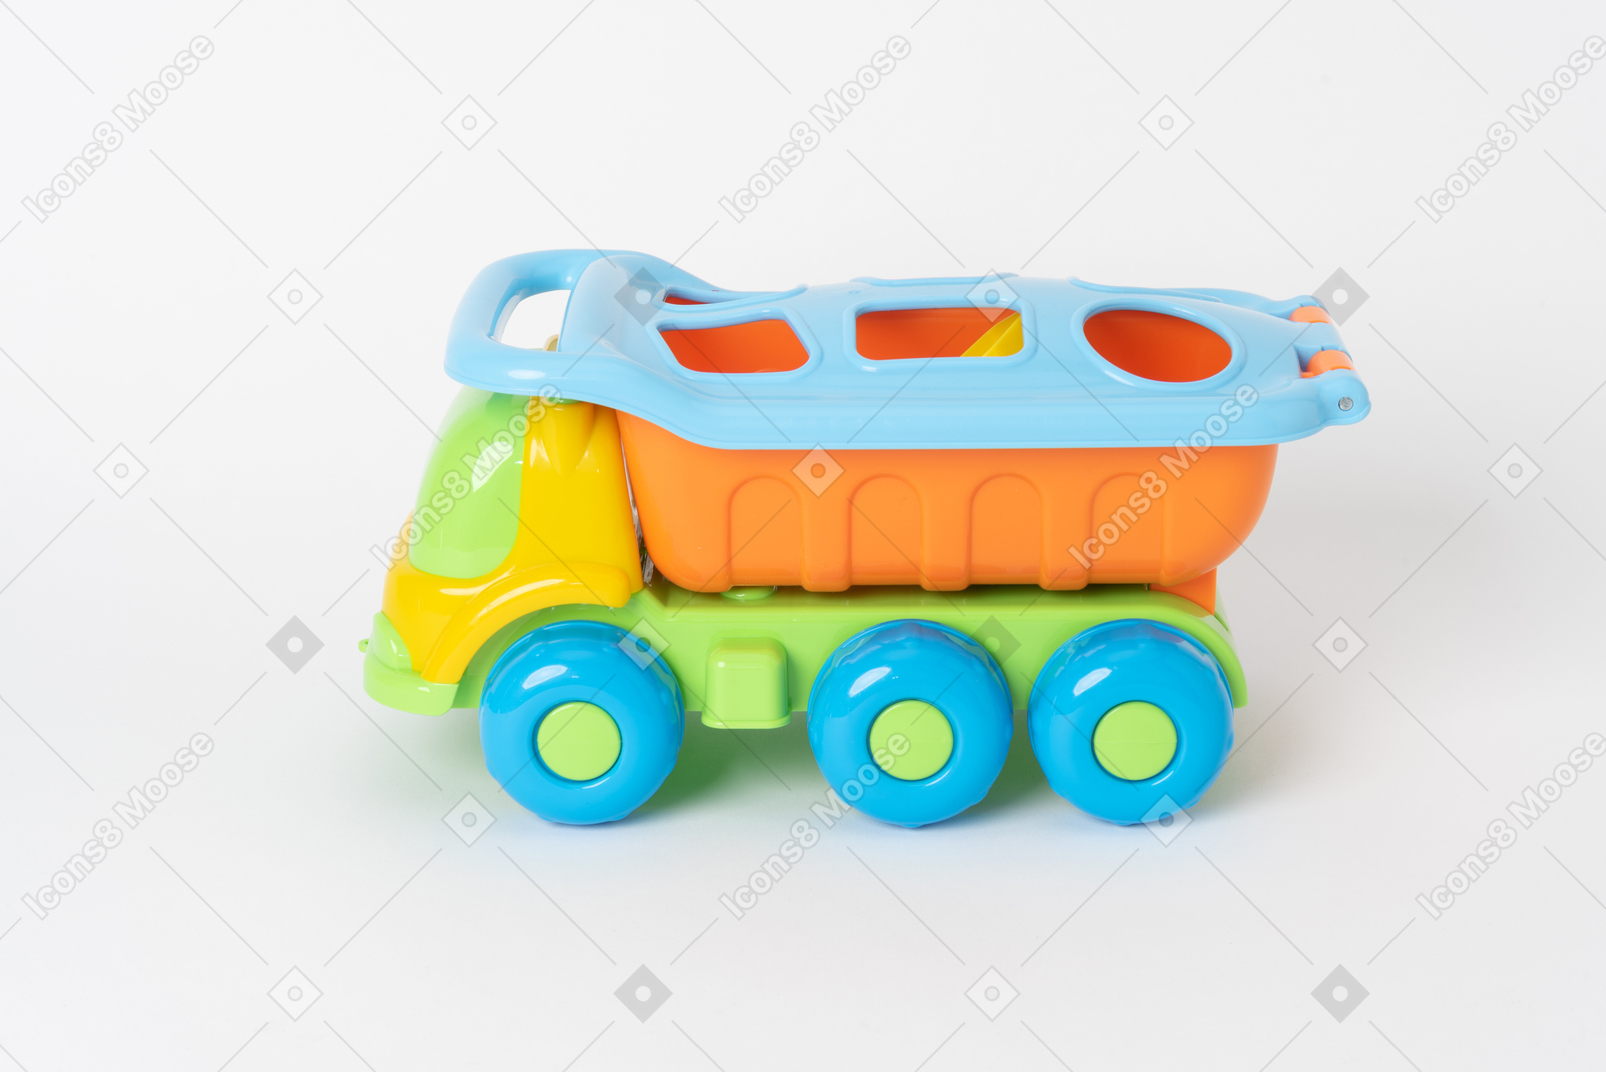 Un colorato dumper giocattolo in piedi contro un semplice sfondo bianco